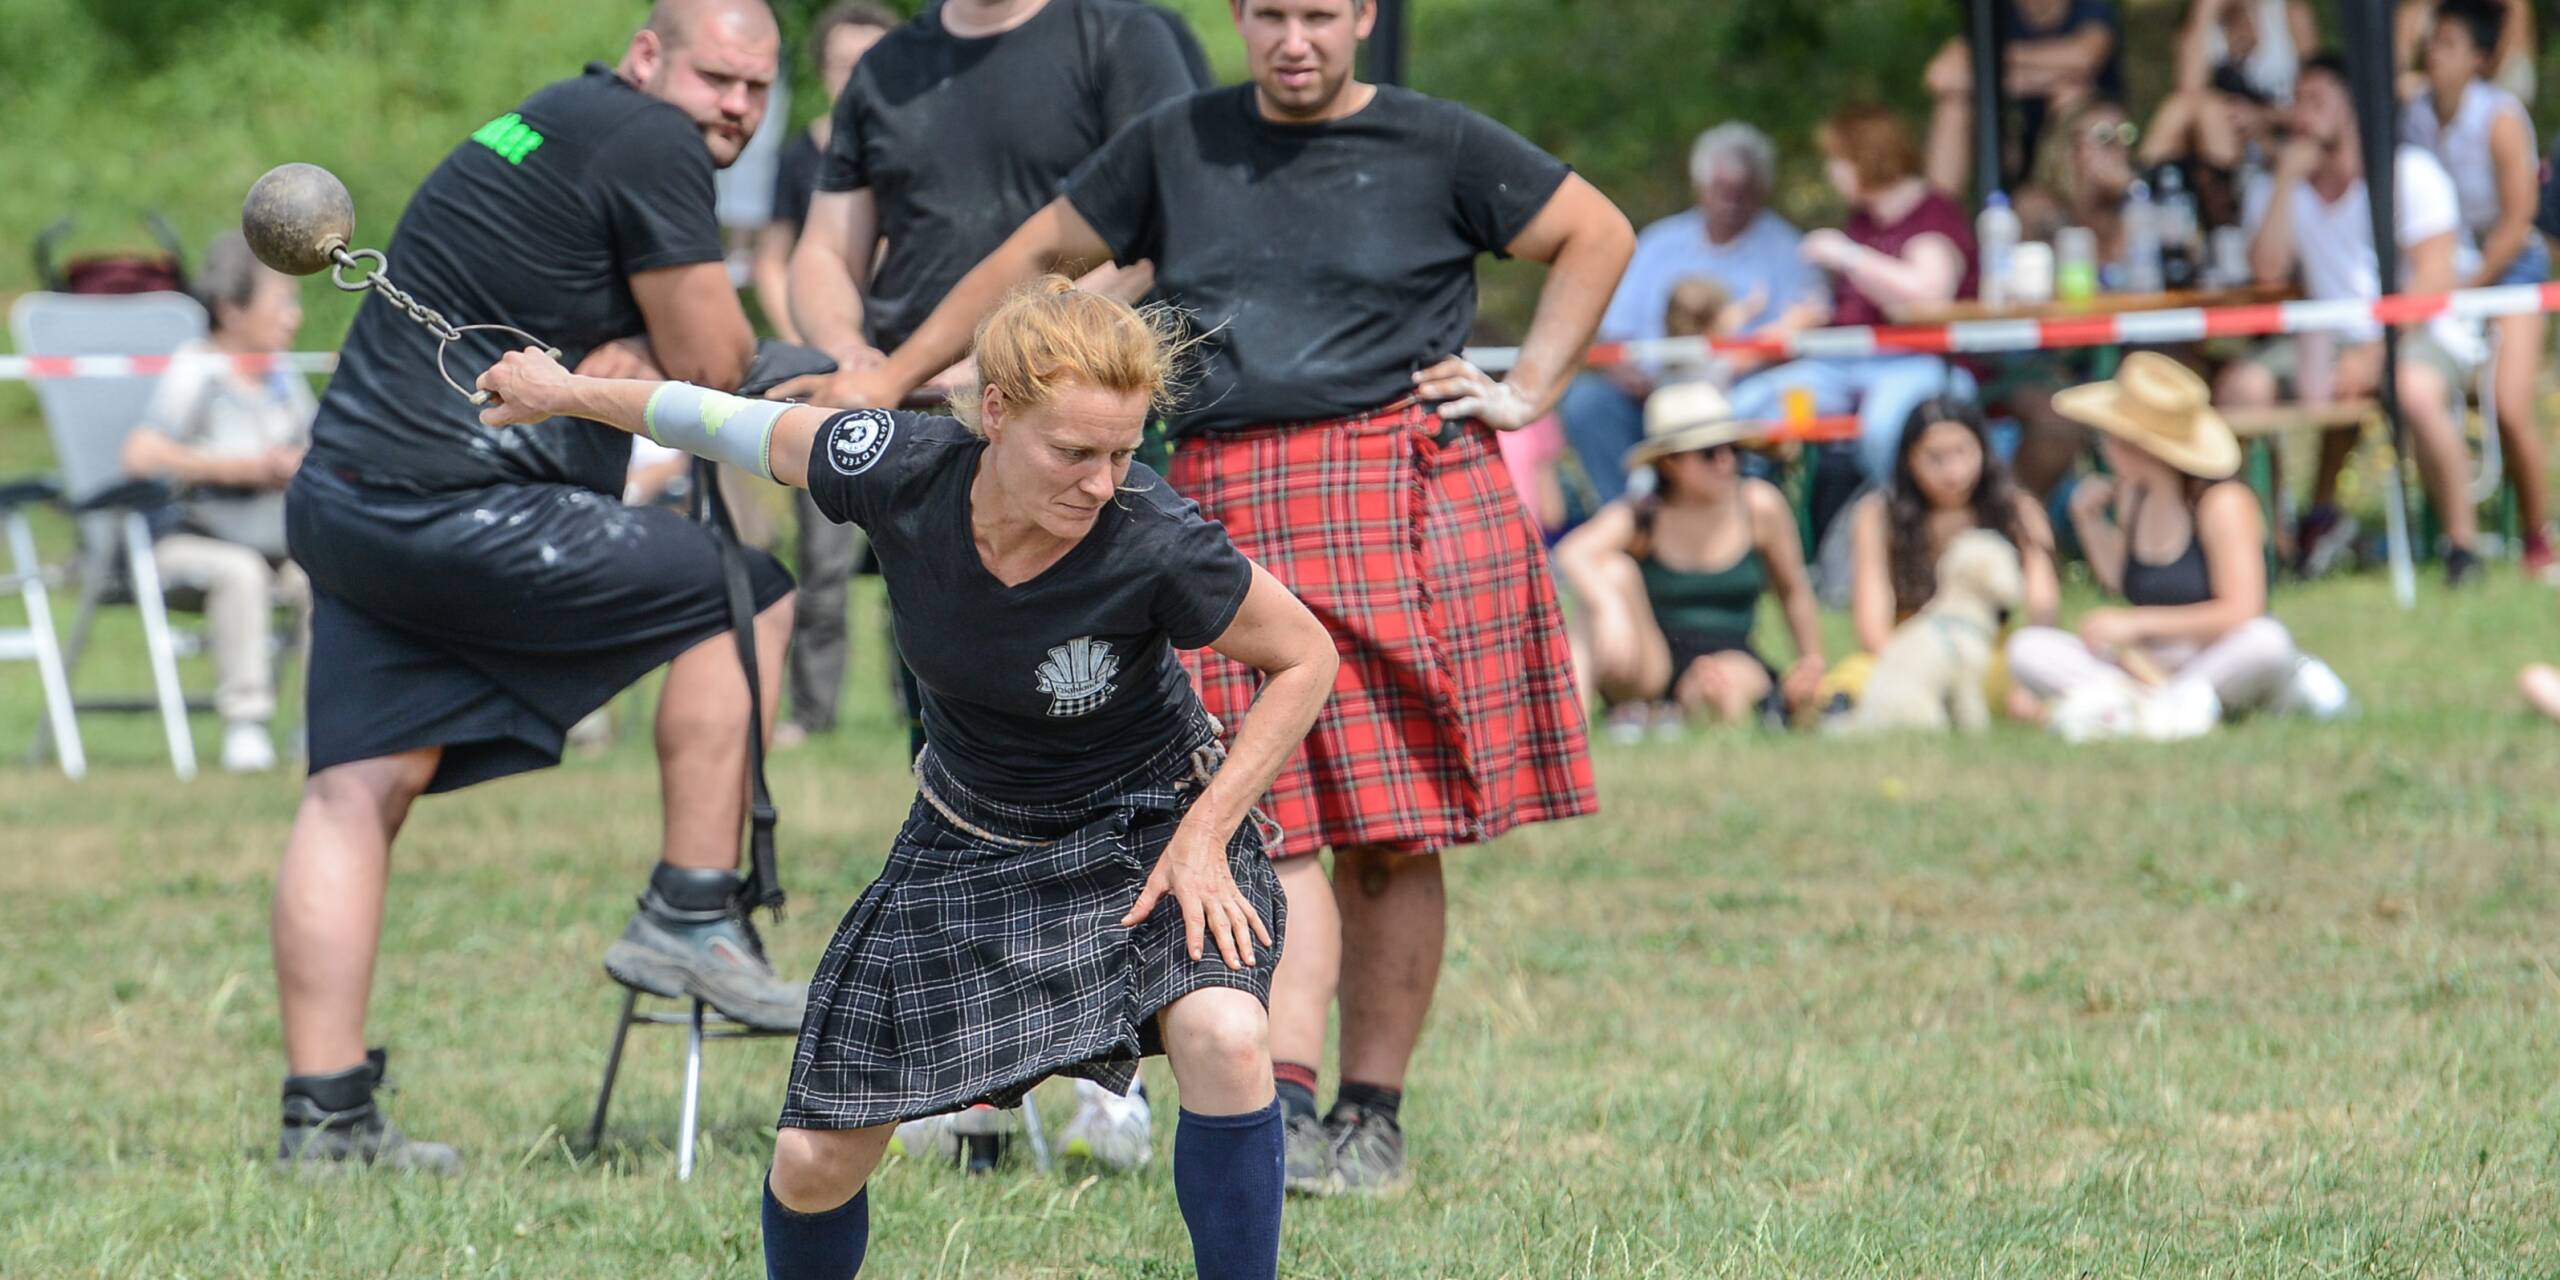 Bei den Highlandern herrscht Gleichberechtigung. Auch Frauen nehmen an den Wettkämpfen teil.